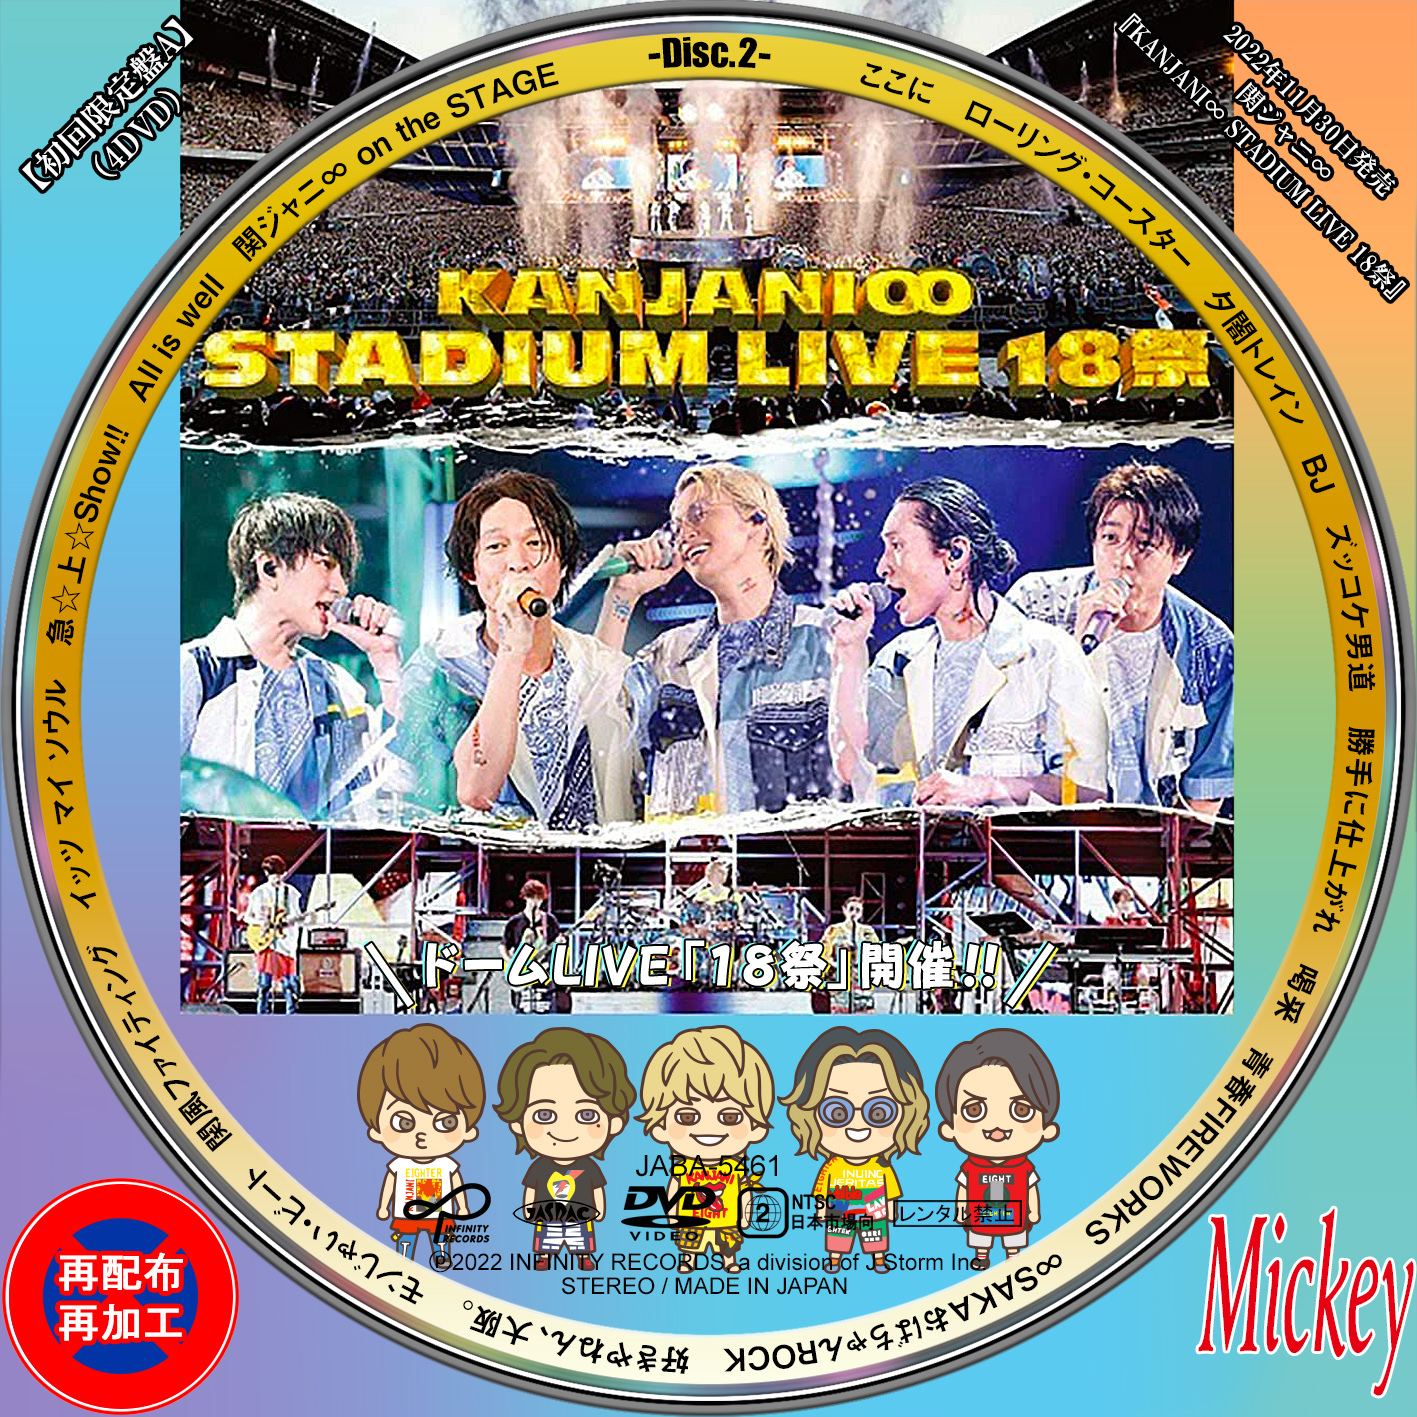 関ジャニ∞ STADIUM LIVE 18祭 初回A DVD盤 ntu-nn.ru